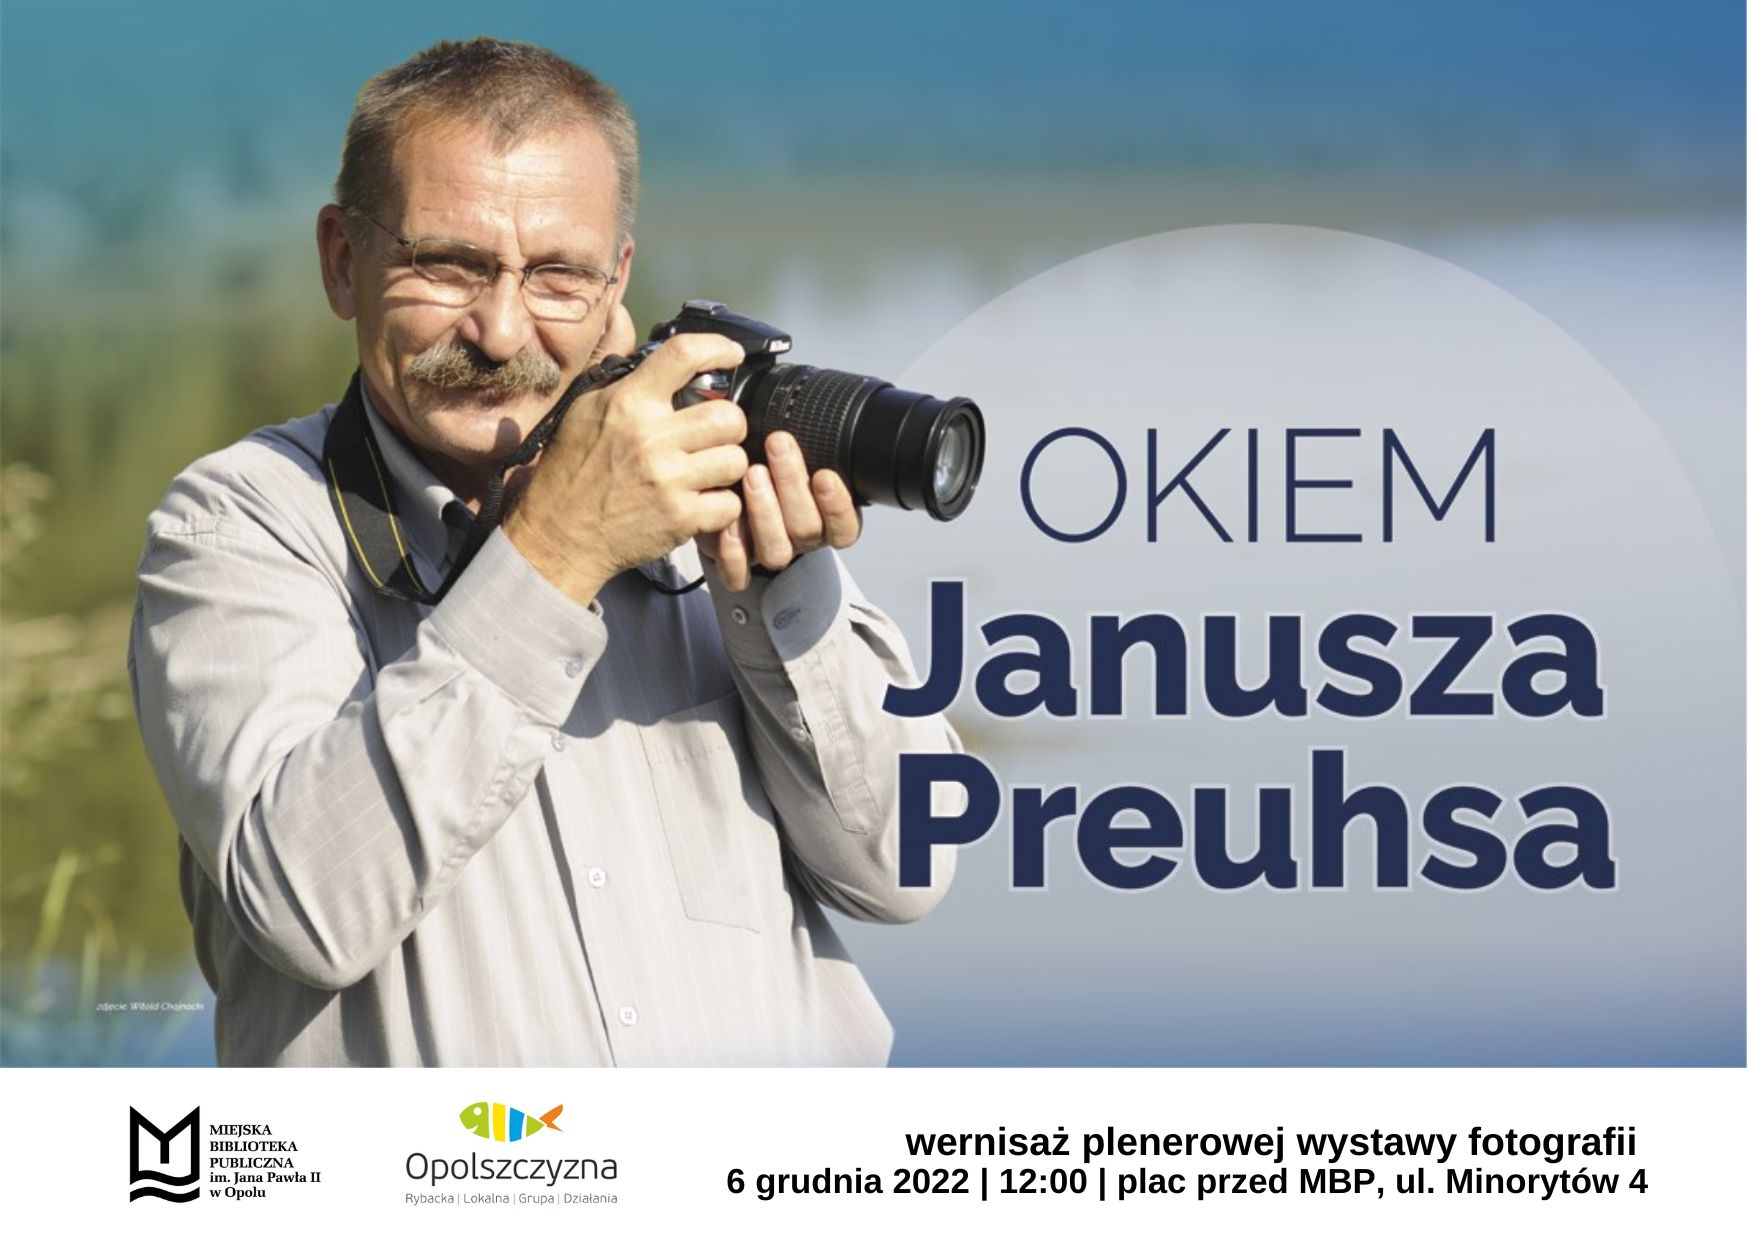 Plenerowa wystawa przyrodniczych zdjęć pt. Okiem Janusza Preuhsa od 6 grudnia do 28 lutego przed MBP w Opolu